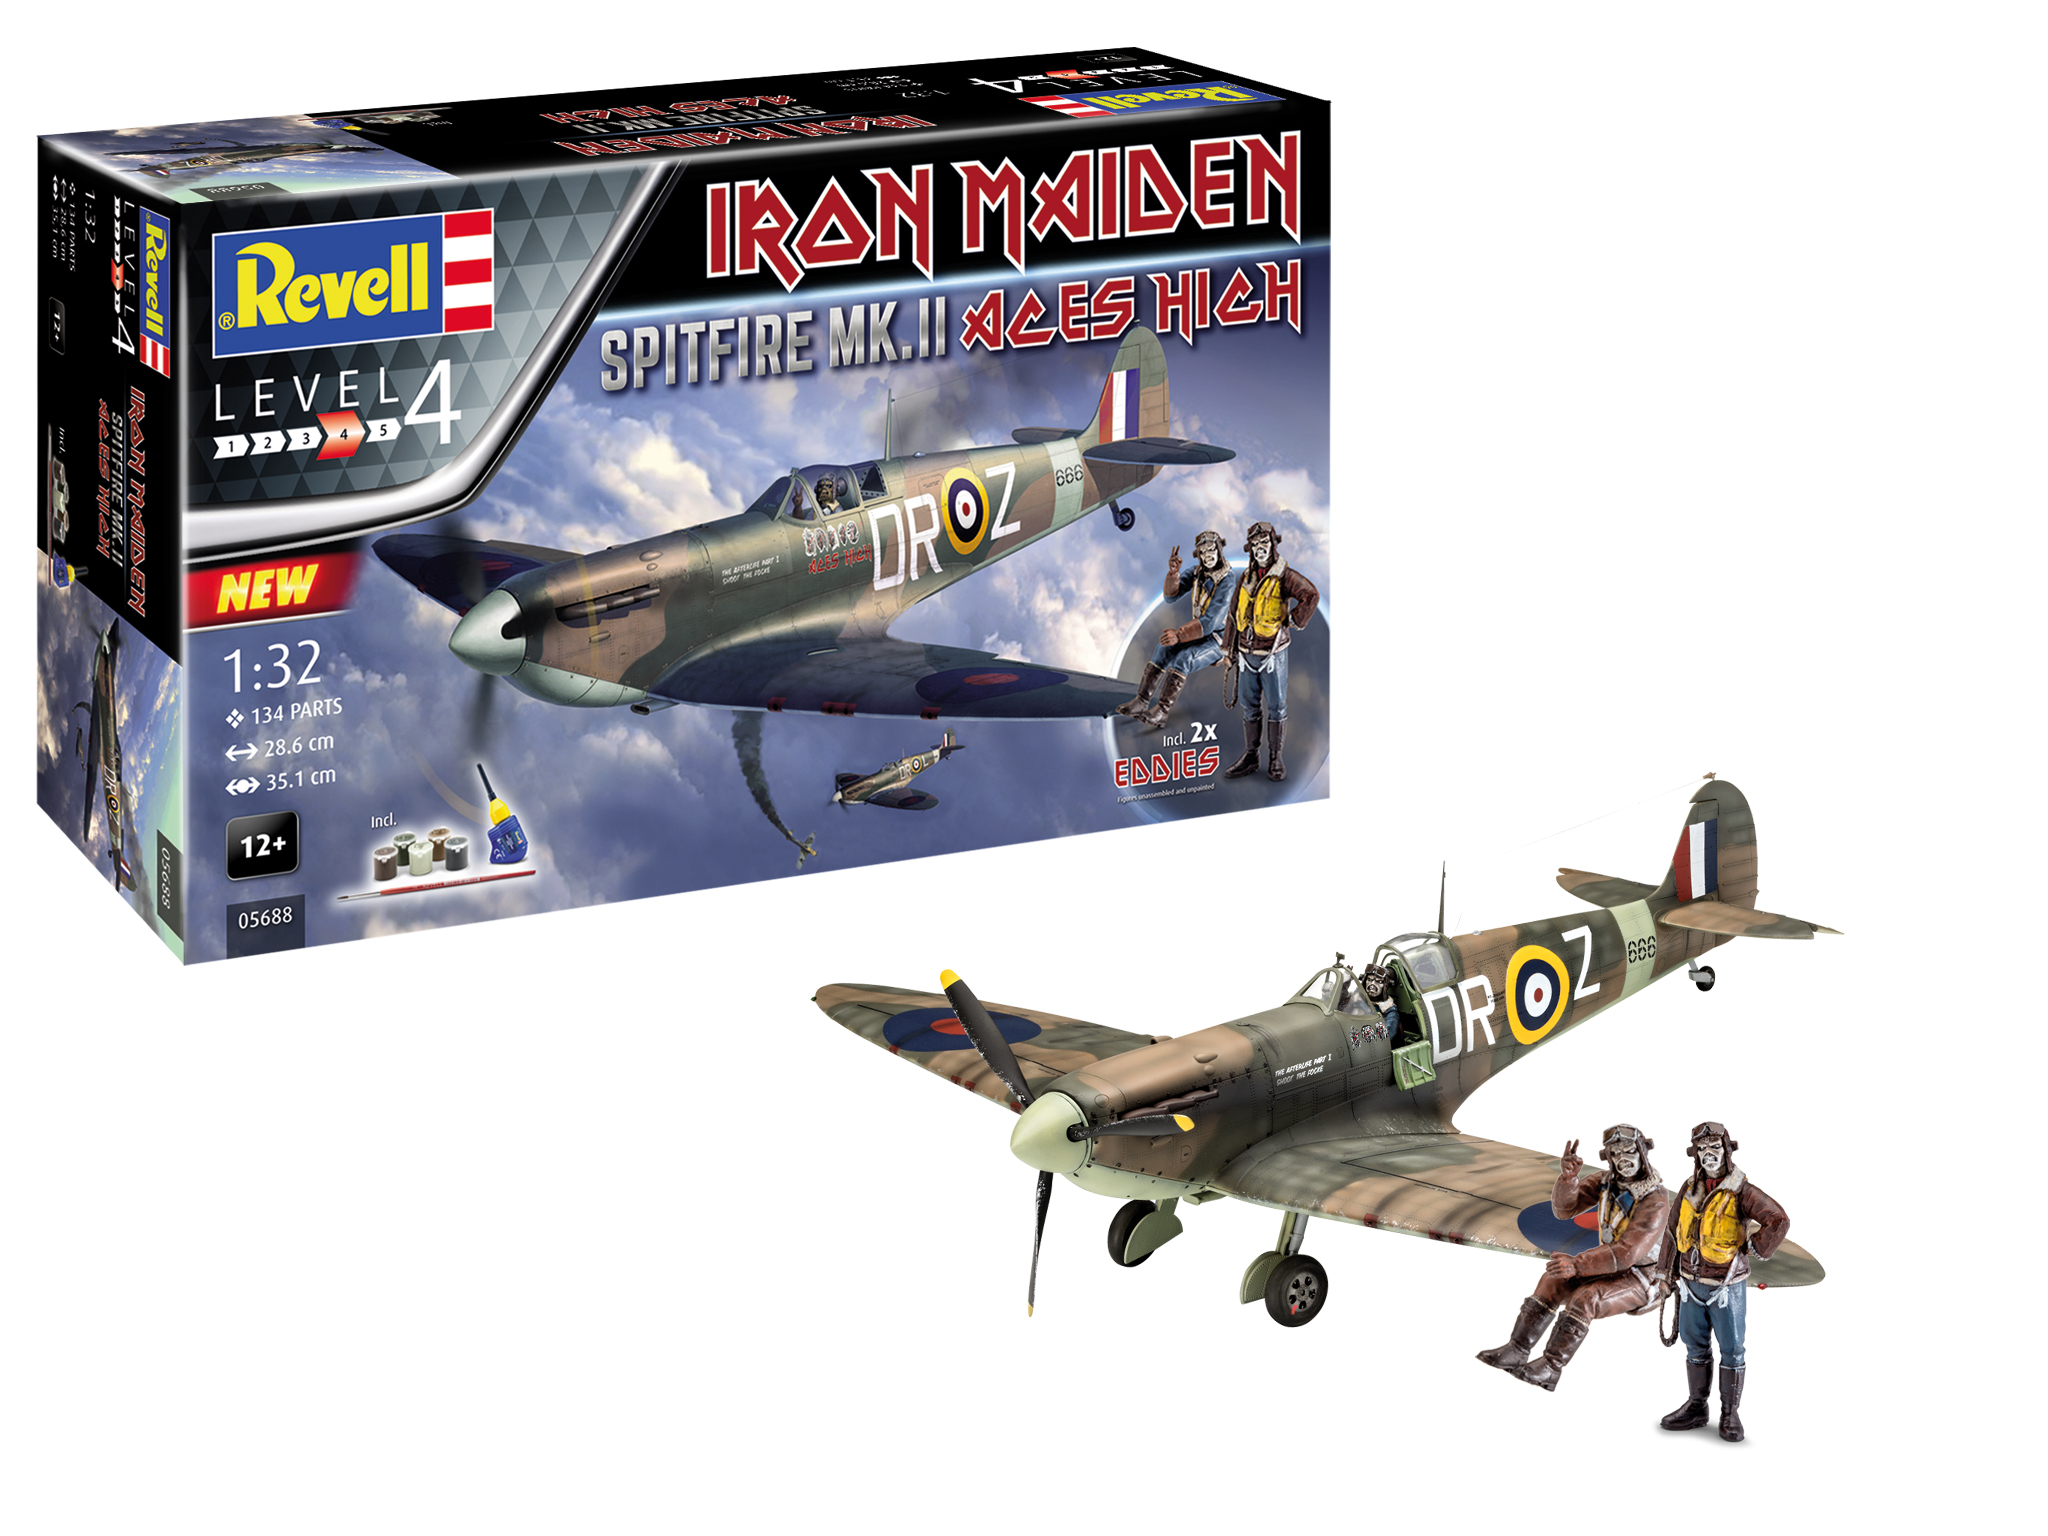 Beeldhouwer schoner Omringd Revell Model Set Spitfire Mk.II "Aces High" Iron Maiden 1:32 bouwpakket met  lijm en verf · Toemen Modelsport